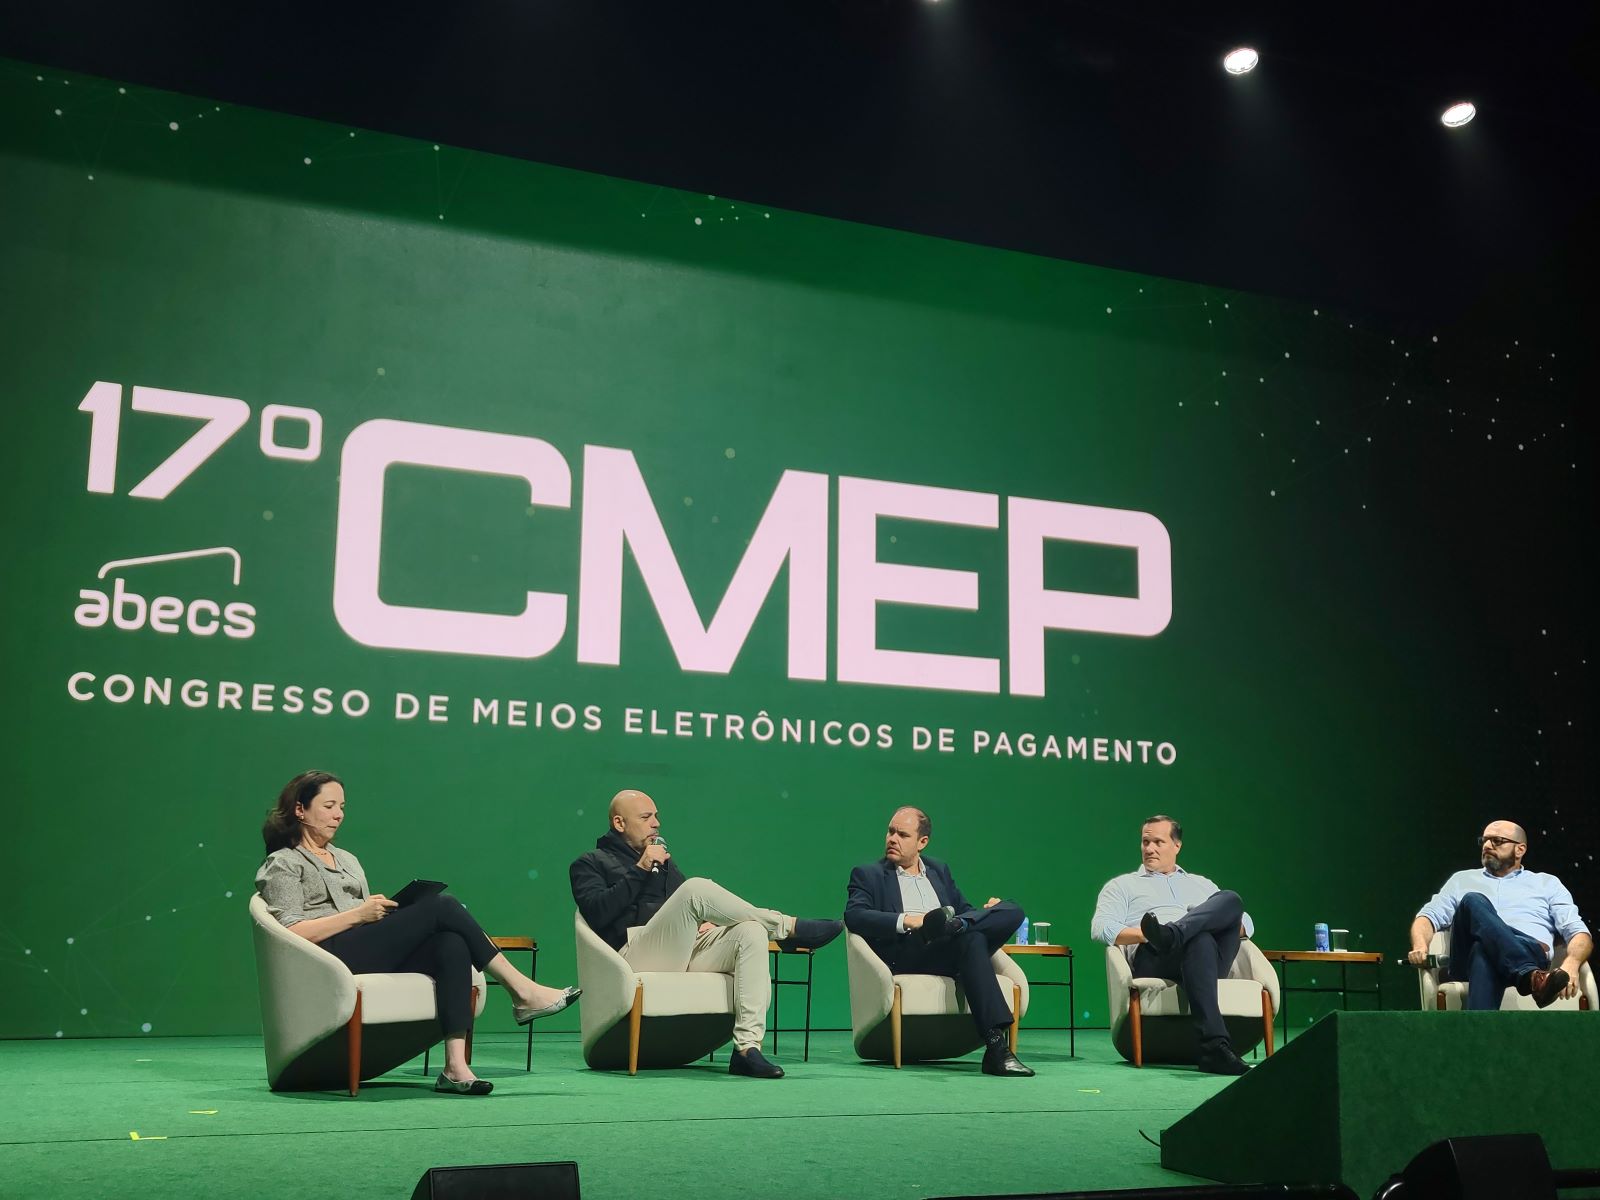 Quatro pessoas estão no palco que tem um telão com o logo do CMEP, evento sobre meios eletrônicos de pagamento, ao fundo.